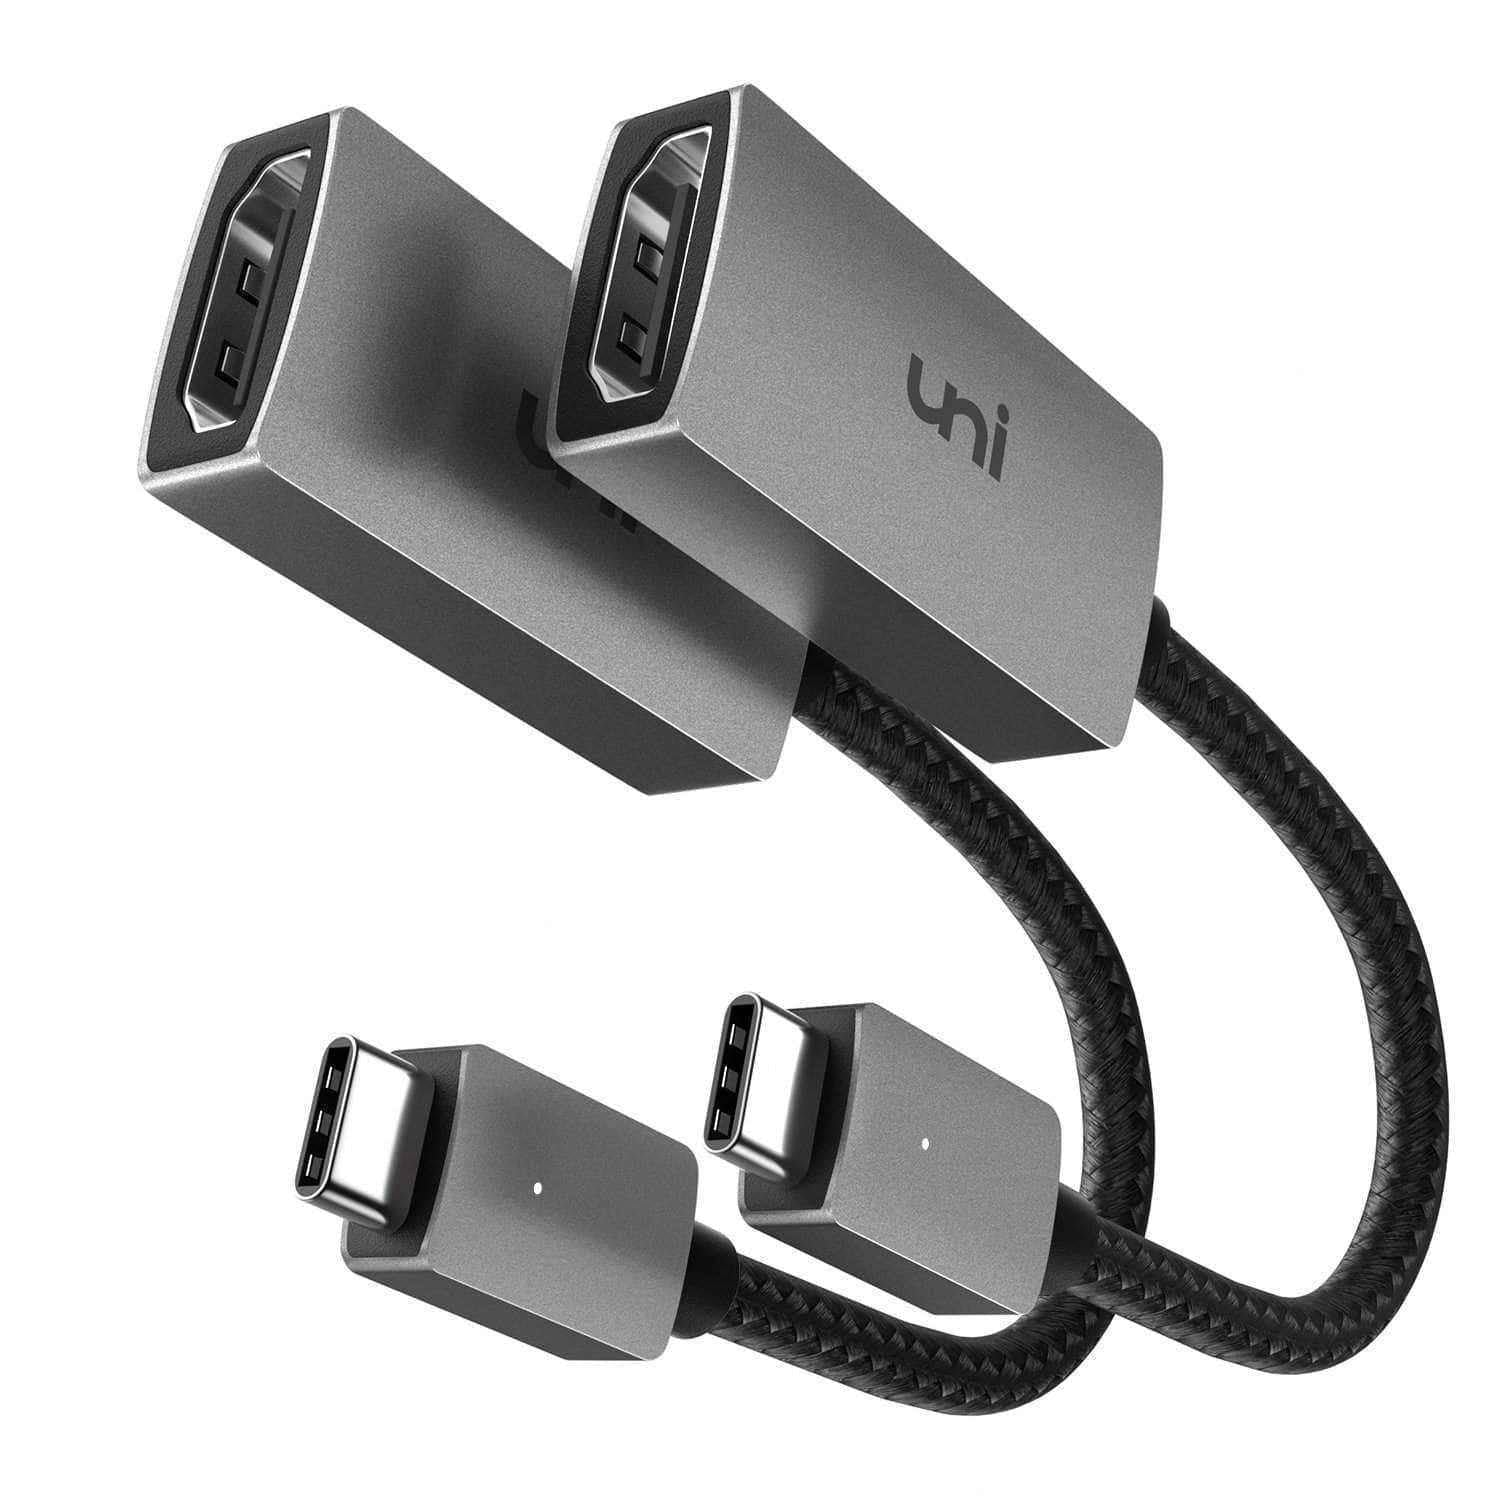 C to HDMI Adapter 4K / Dual Monitors for MacBook Air, Aluminum